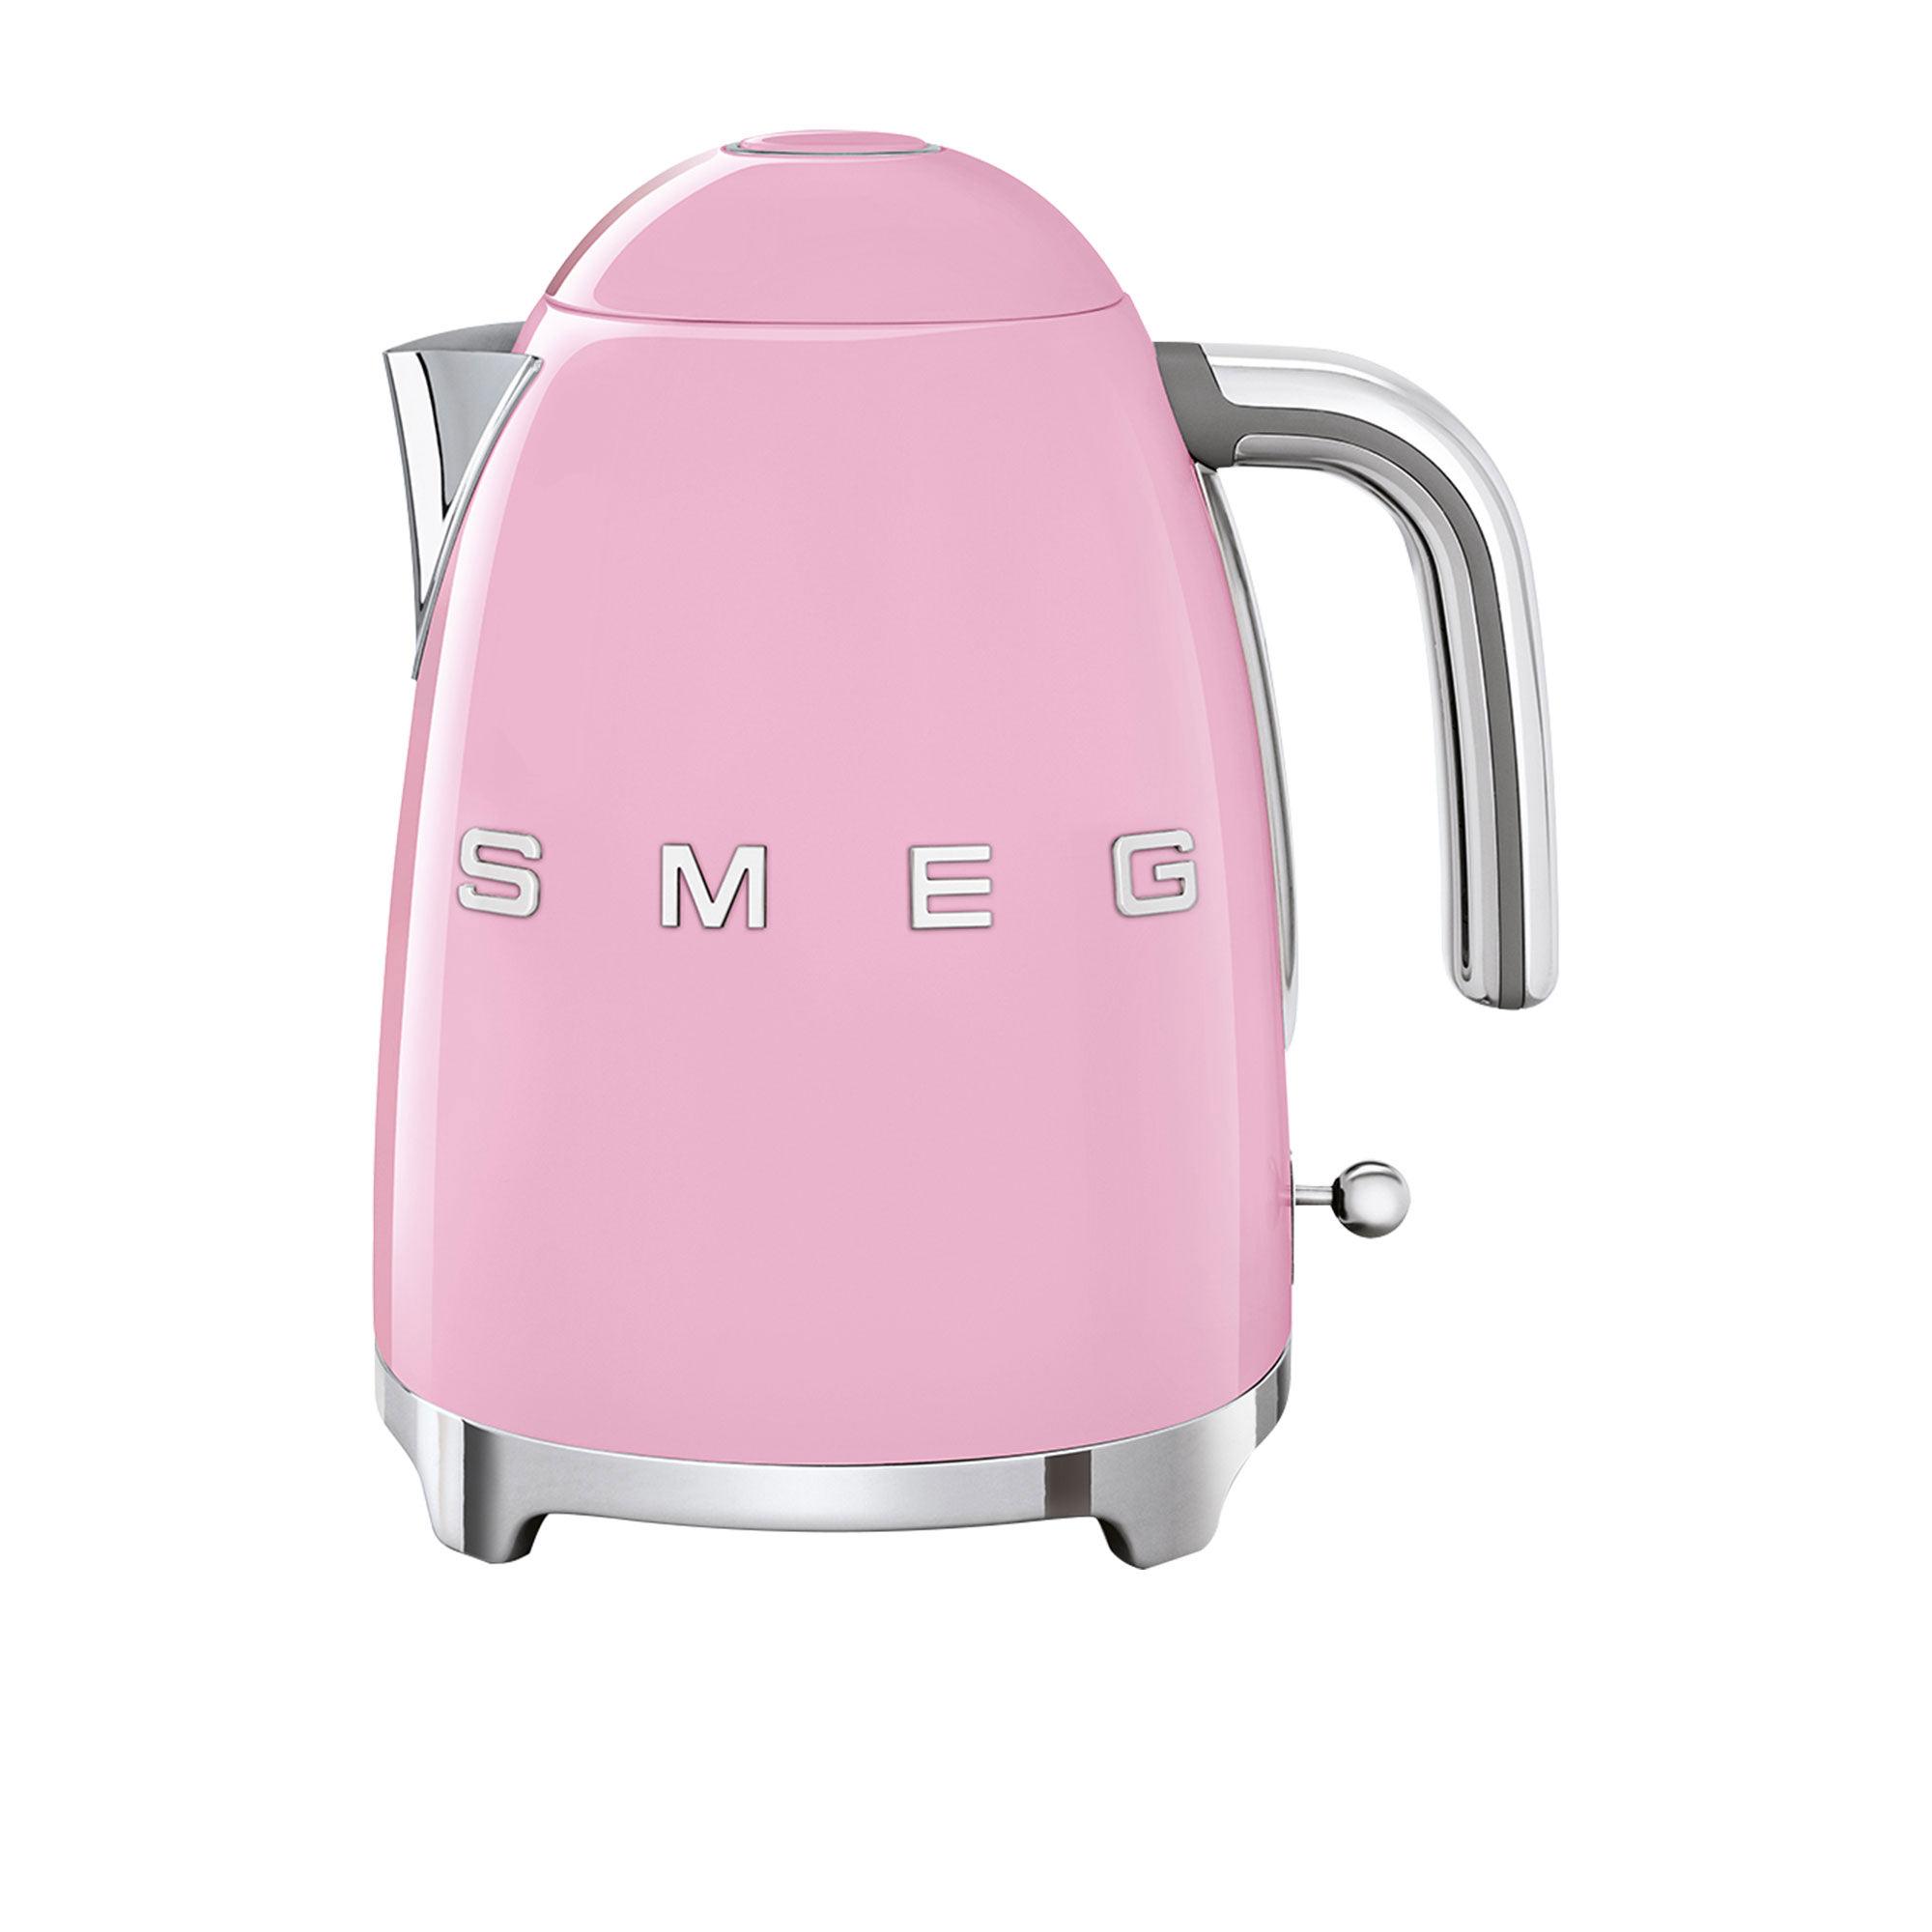 Smeg 50's Retro Style Kettle 1.7L Pastel Pink Image 1